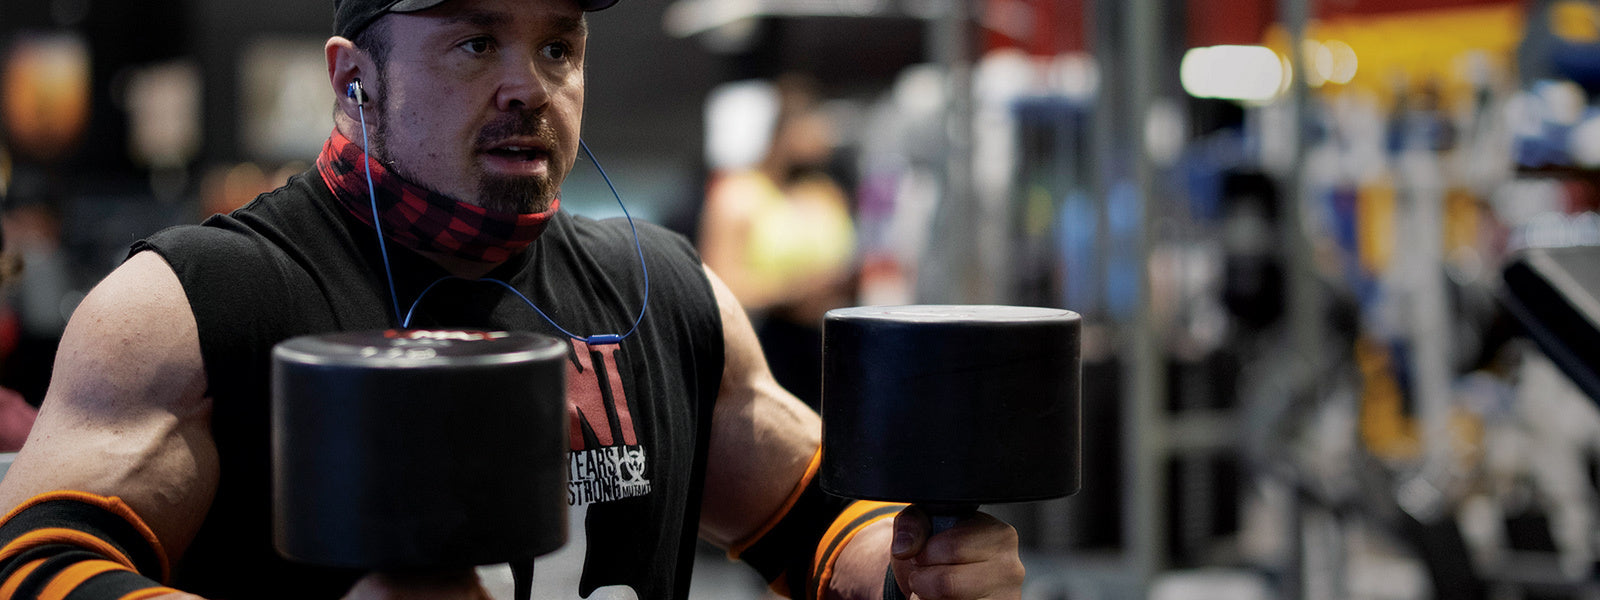 Lift Big, Get Big: The 5 Strength Training Secrets for Massive Size - MUTANT